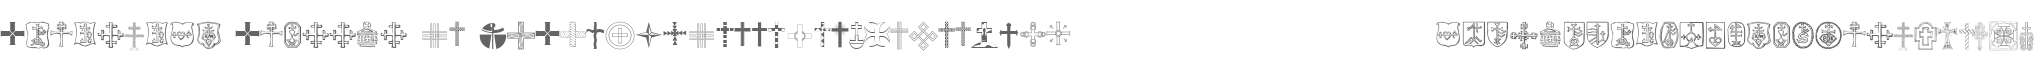 Christian Crosses IV V2